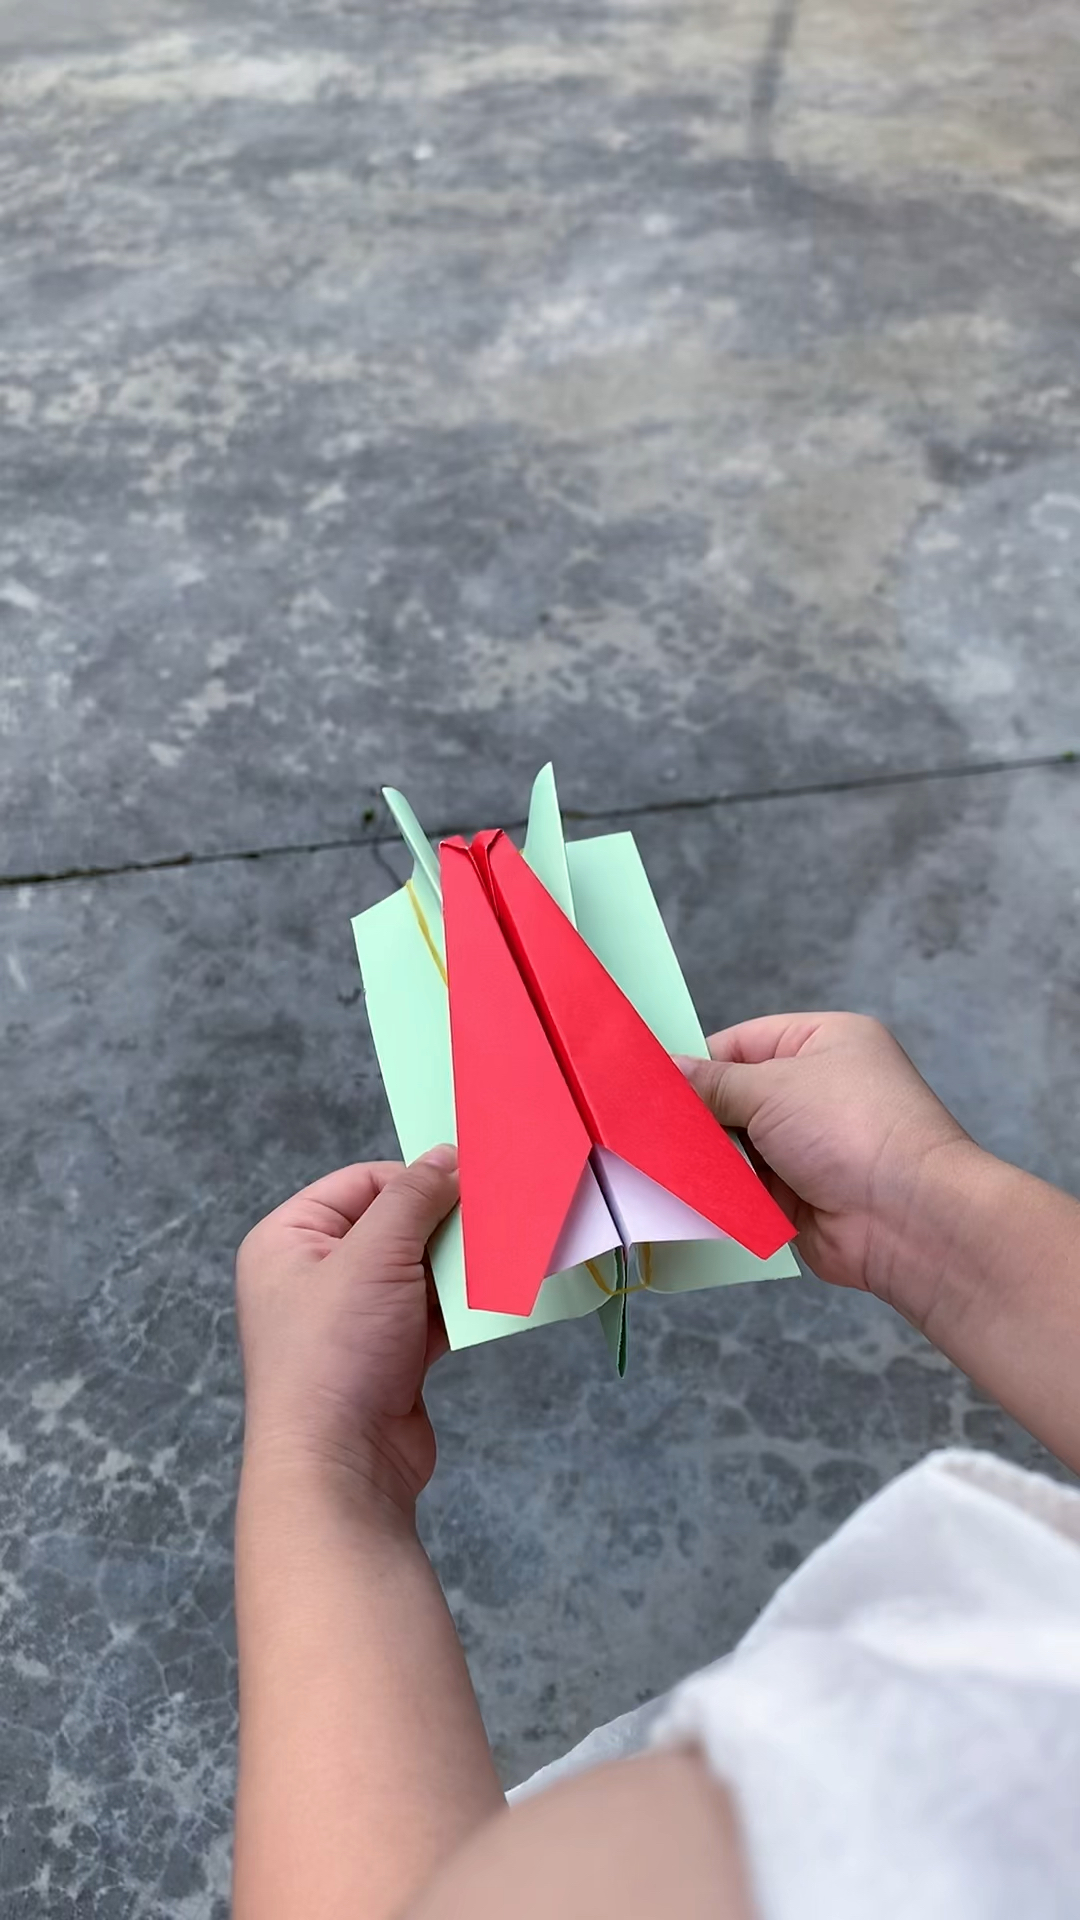 手工折纸给孩子做一个皮筋弹射纸飞机不用哈一口气就能飞飞机喽太好玩